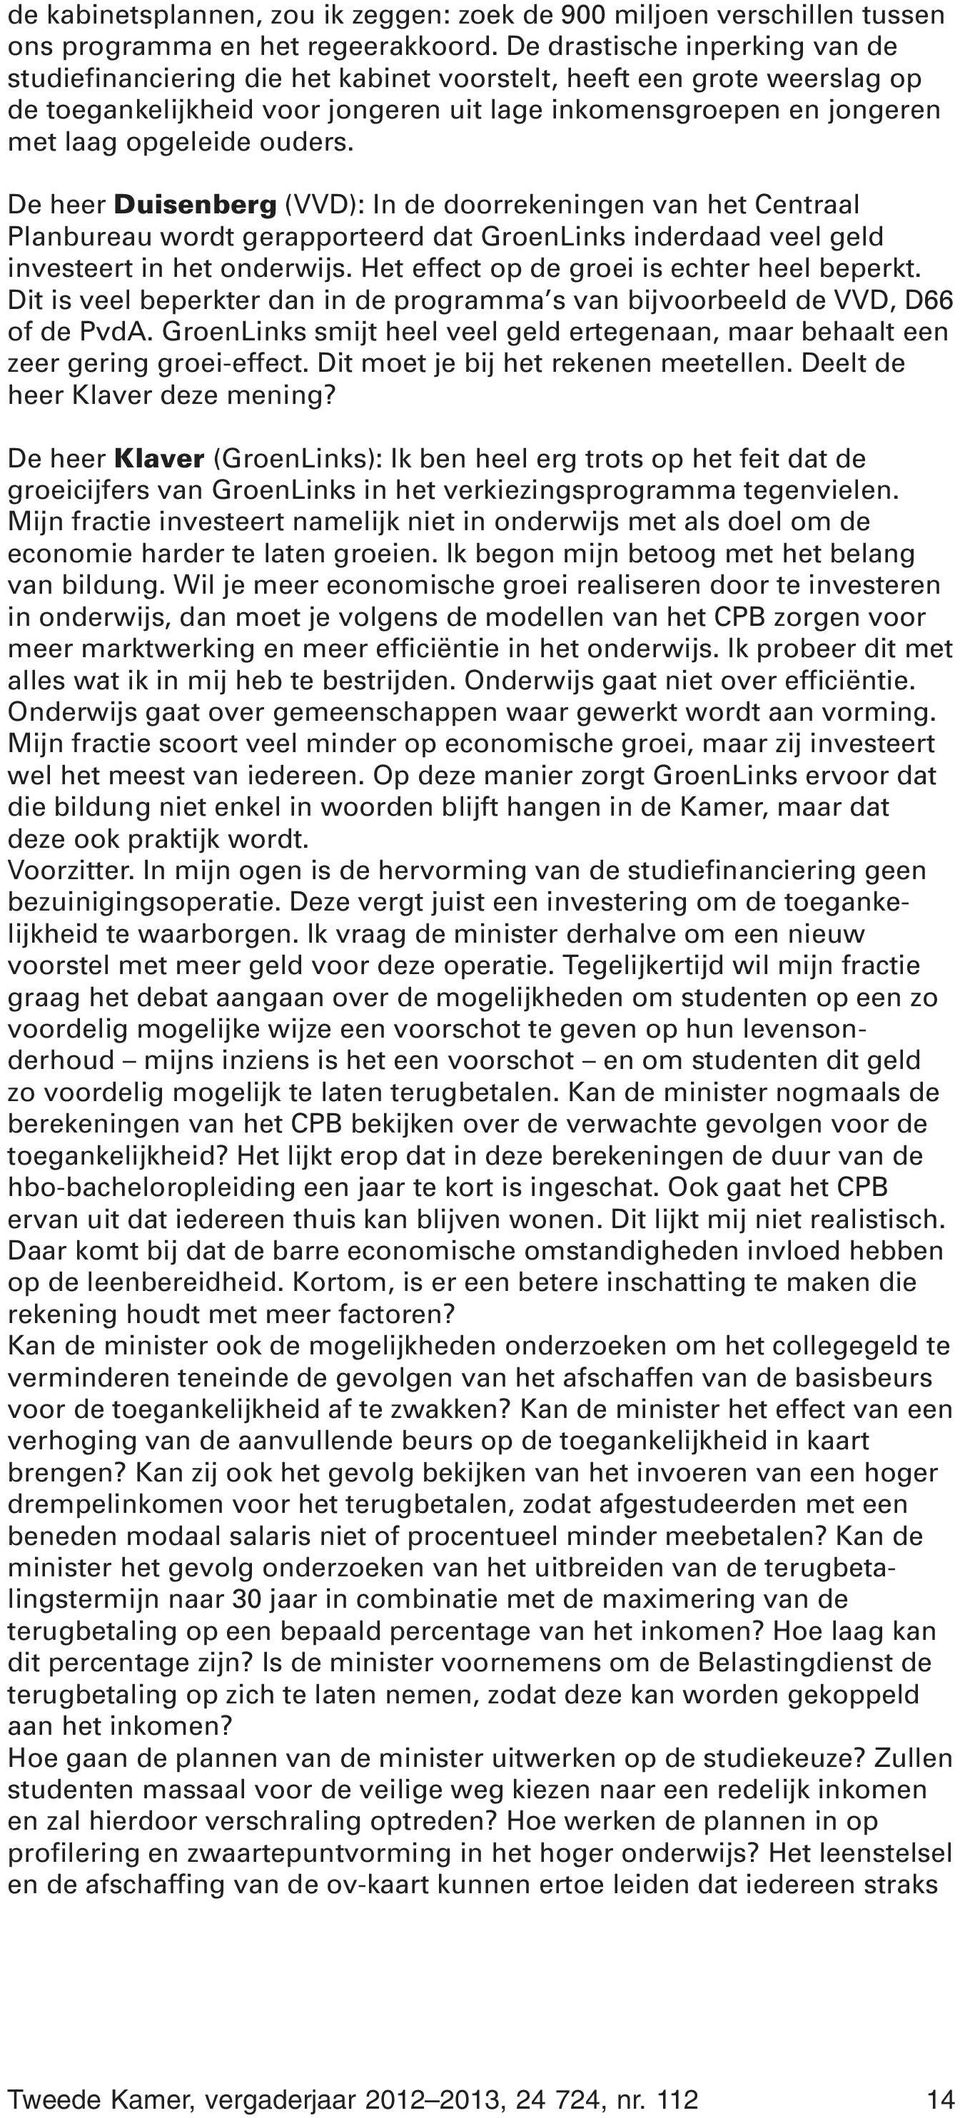 ouders. De heer Duisenberg (VVD): In de doorrekeningen van het Centraal Planbureau wordt gerapporteerd dat GroenLinks inderdaad veel geld investeert in het onderwijs.